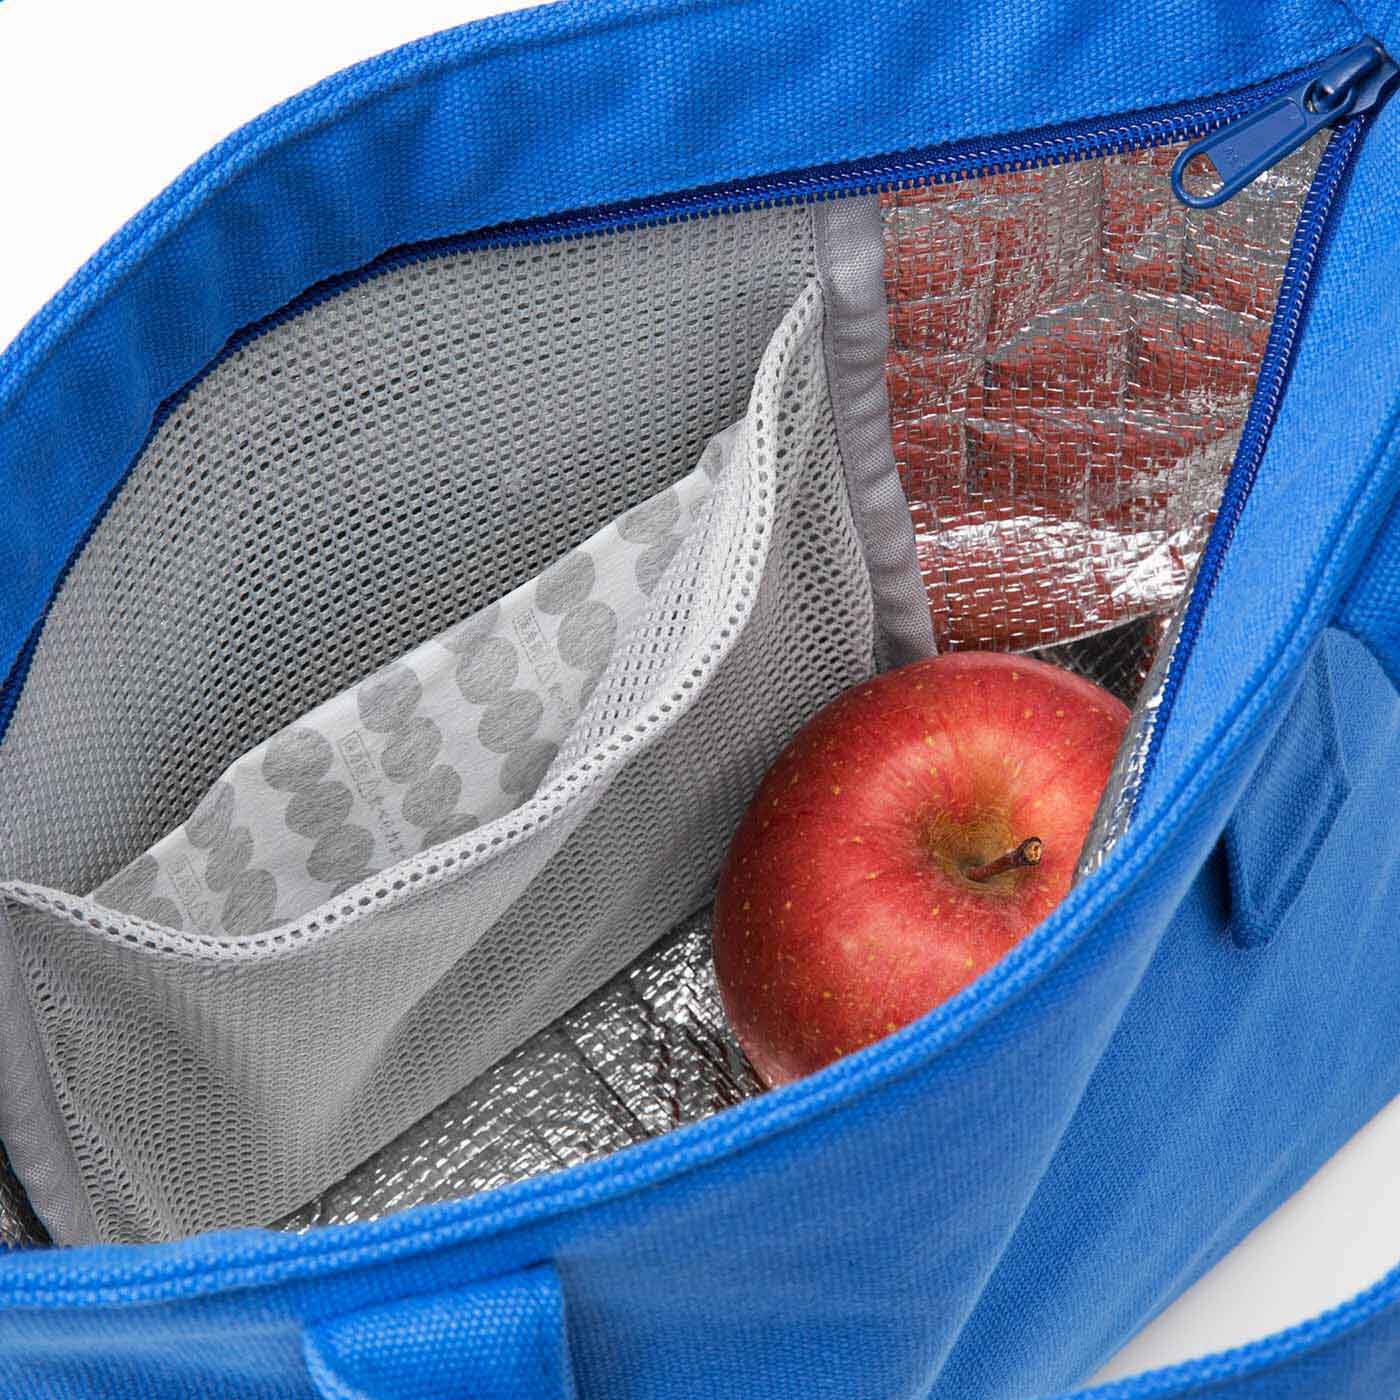 SeeMONO|保冷保温機能がうれしい フレンチブルーの帆布バッグ|内側に保冷剤が入るメッシュポケット付き。